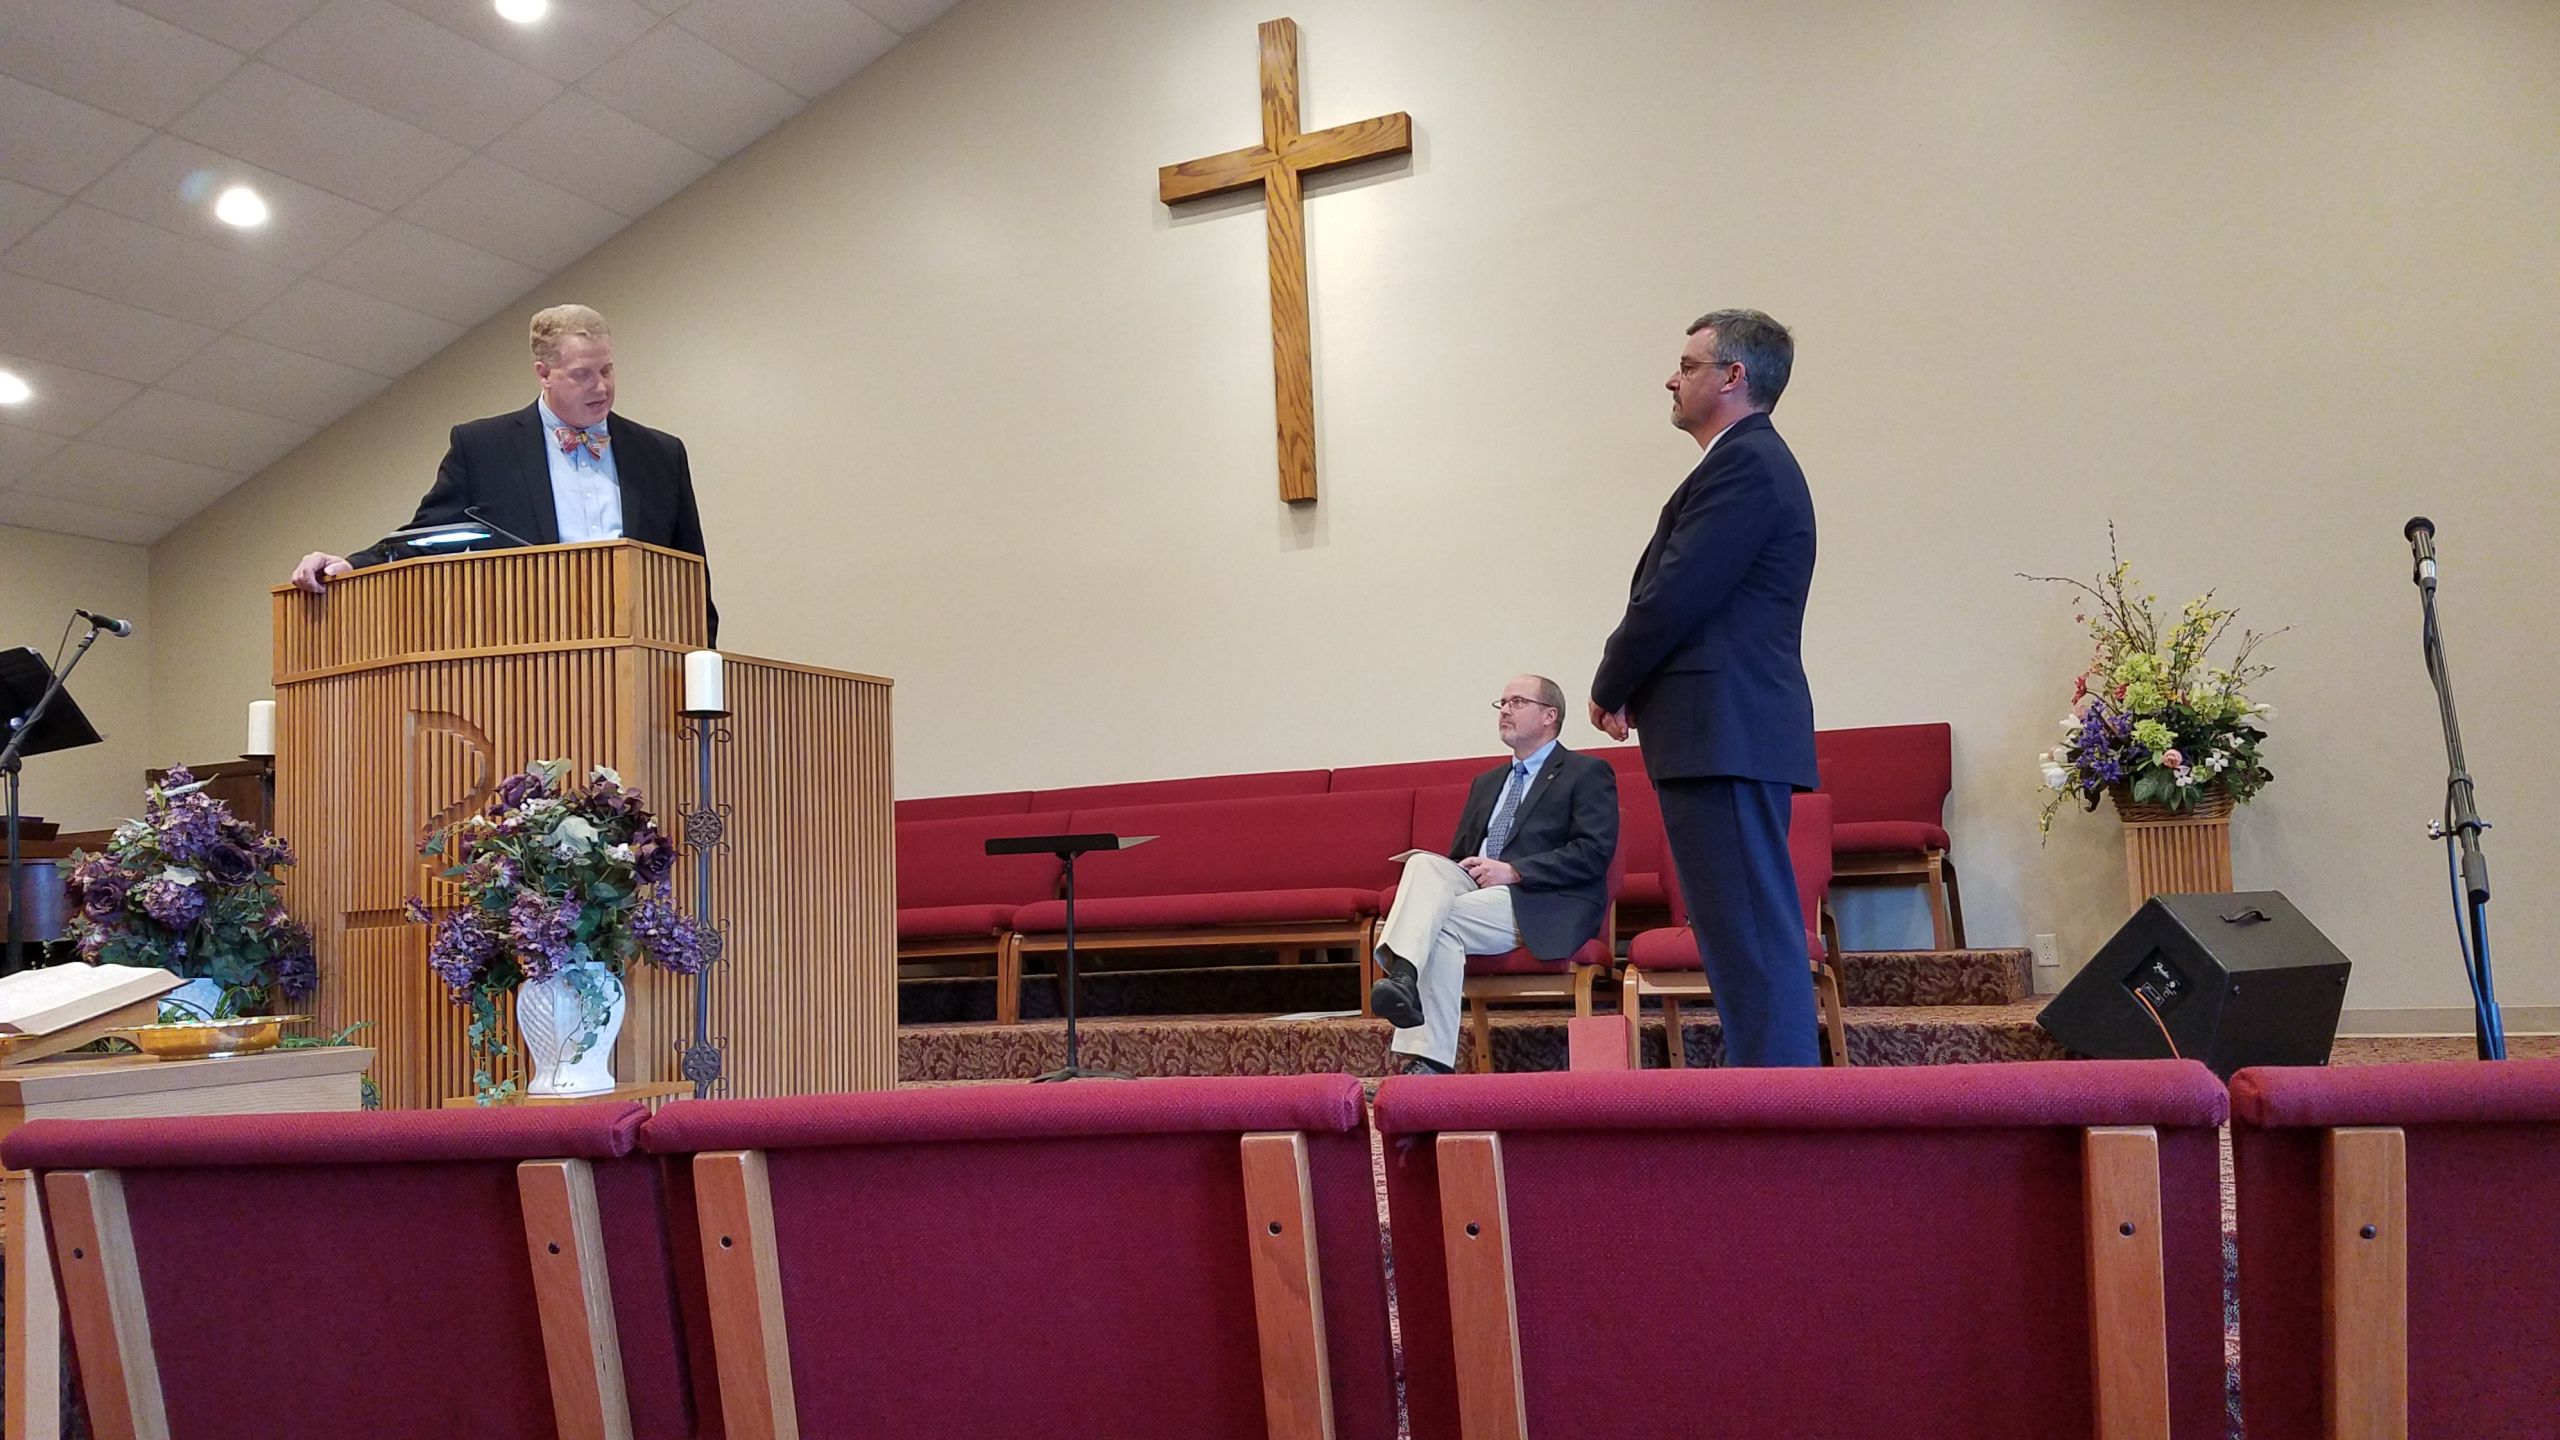 Rev John Dunning giving charge Reverend Tim